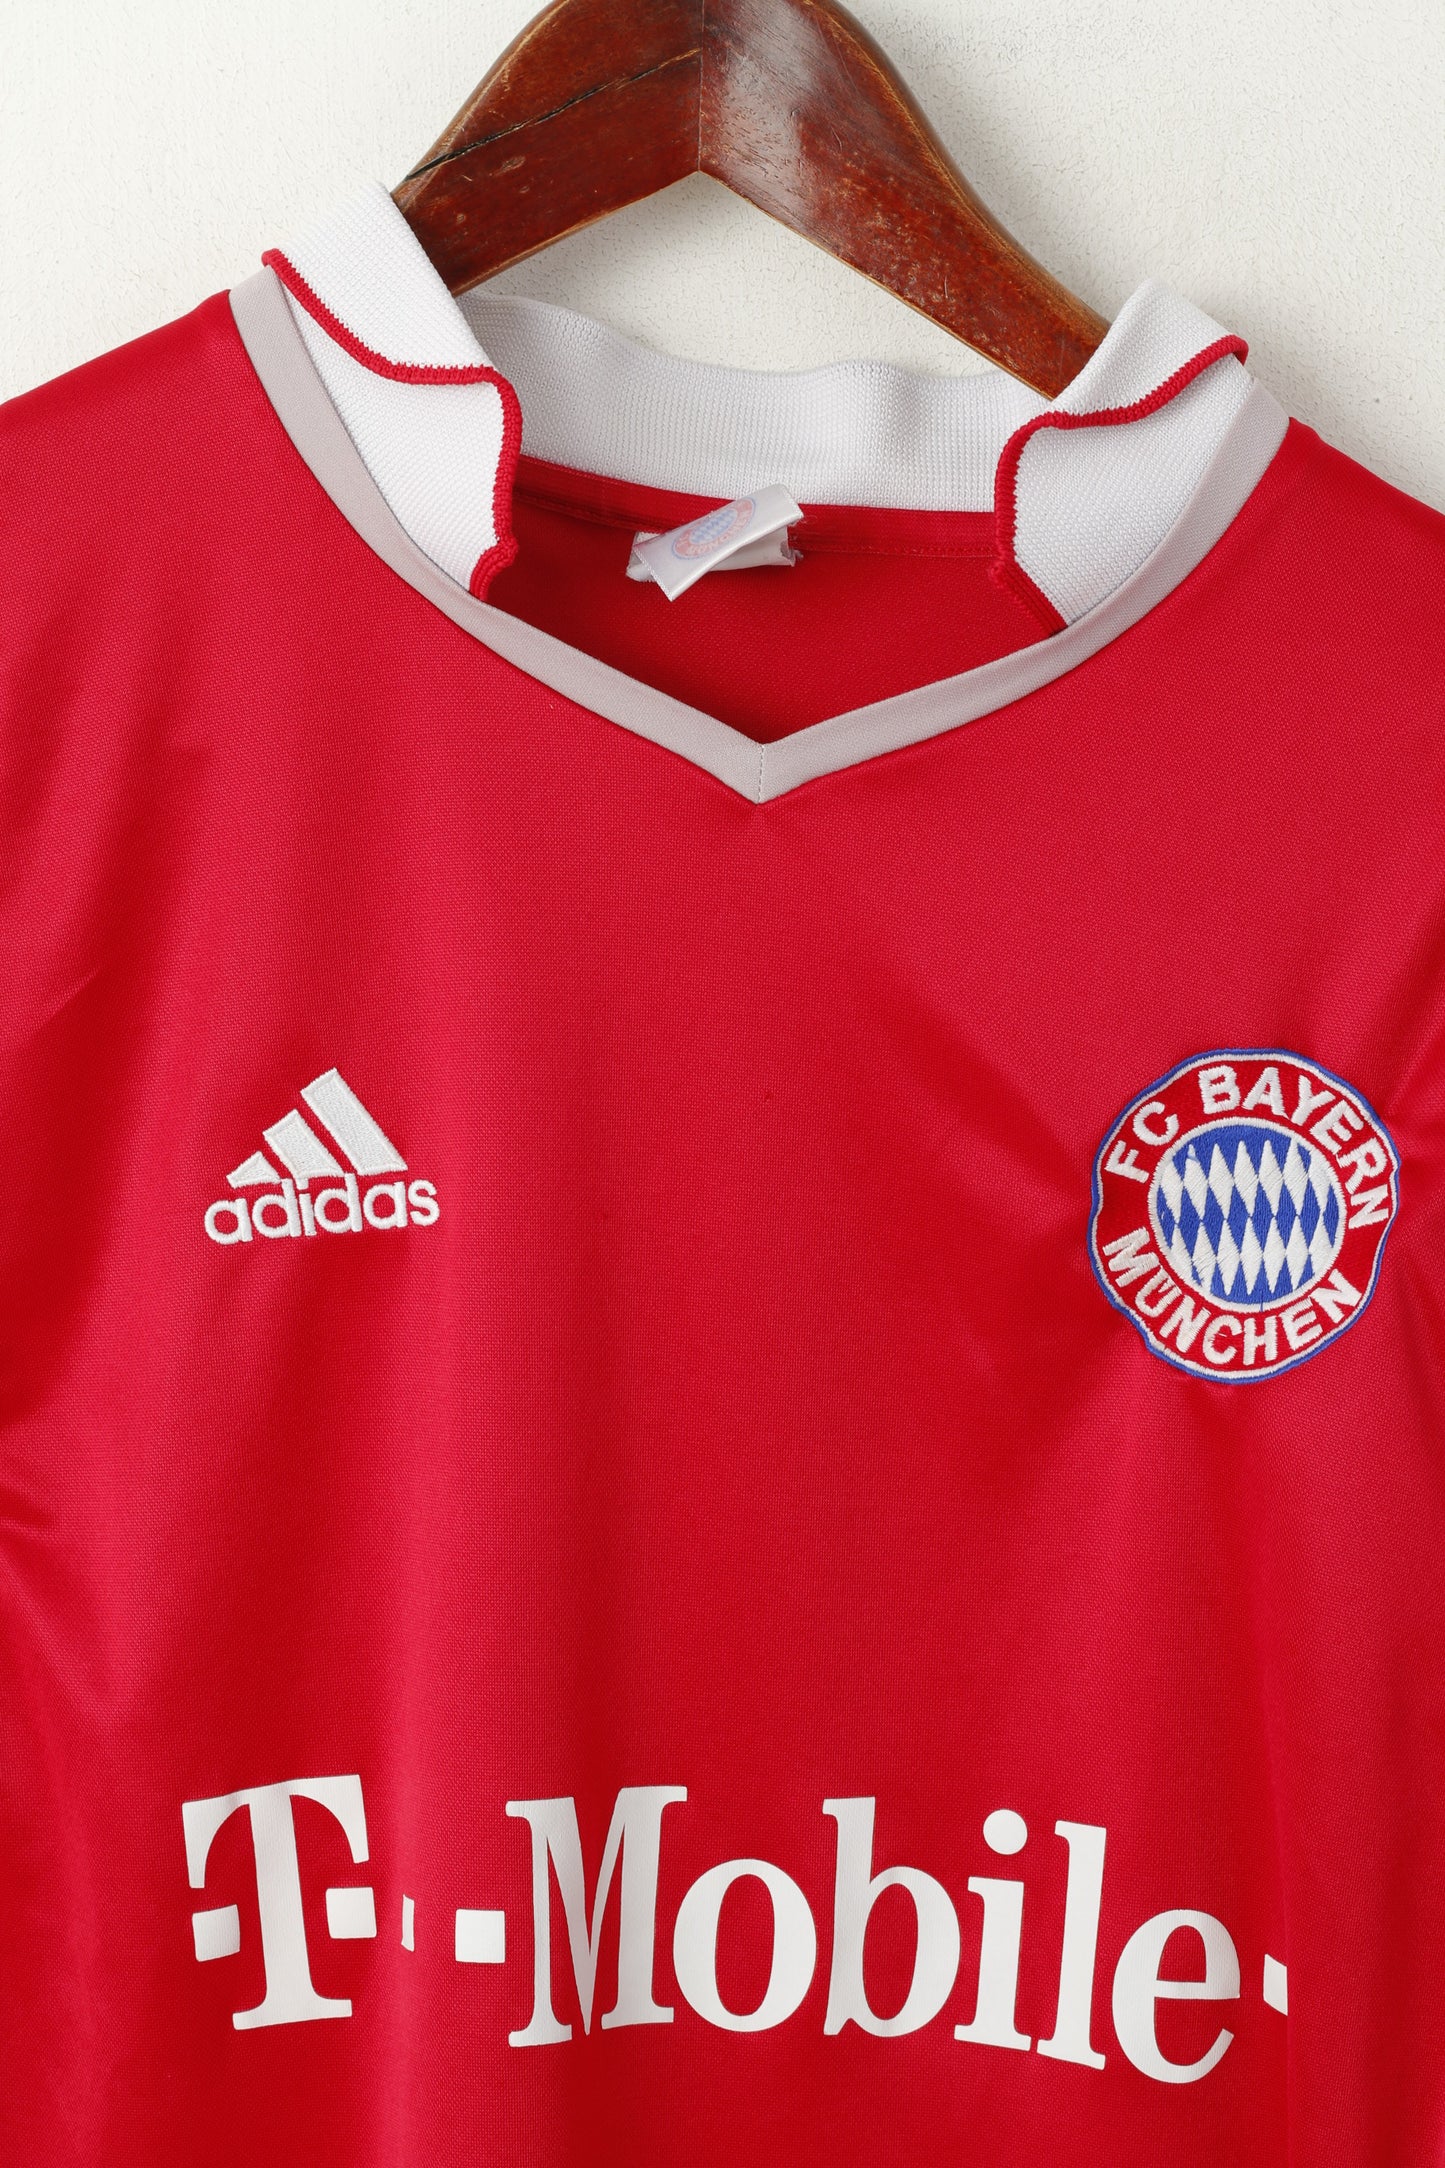 Maglia Adidas FC Bayern Munchen da uomo XL rossa vintage Football Club Jersey